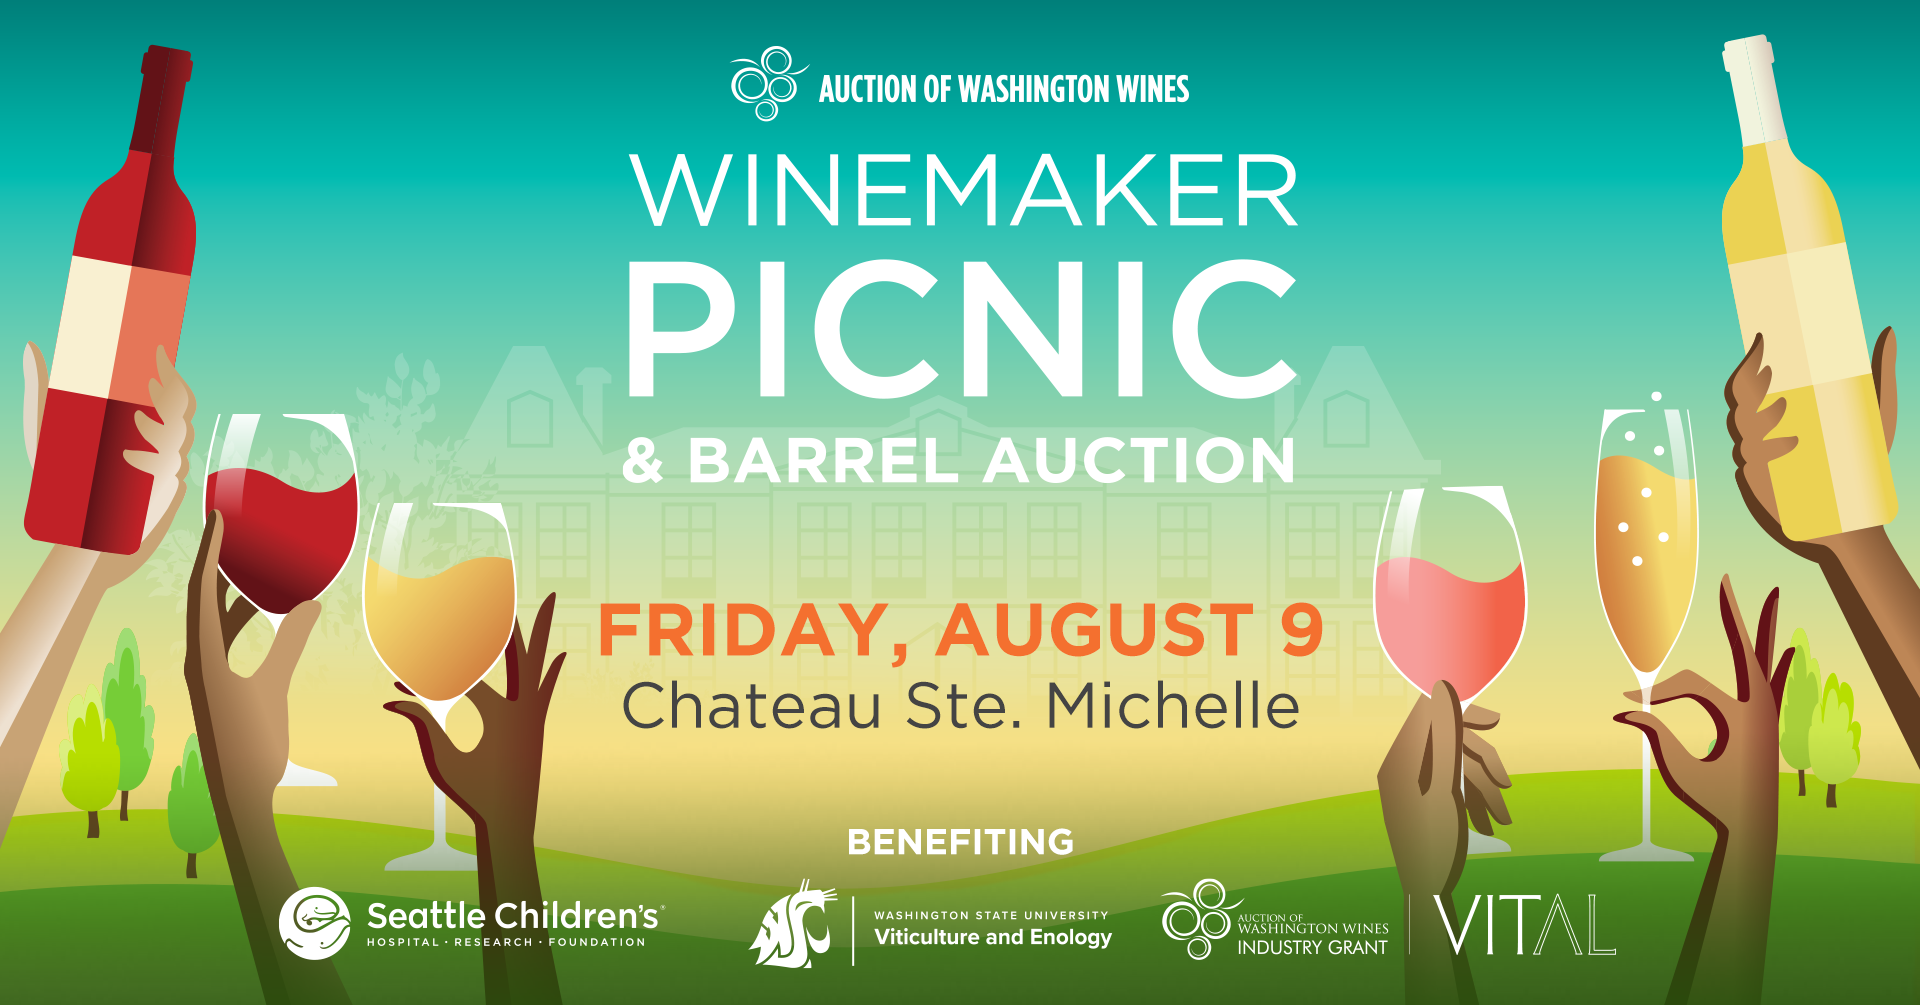 Auction of Washington Wines Winemaker Picnic & Auction image